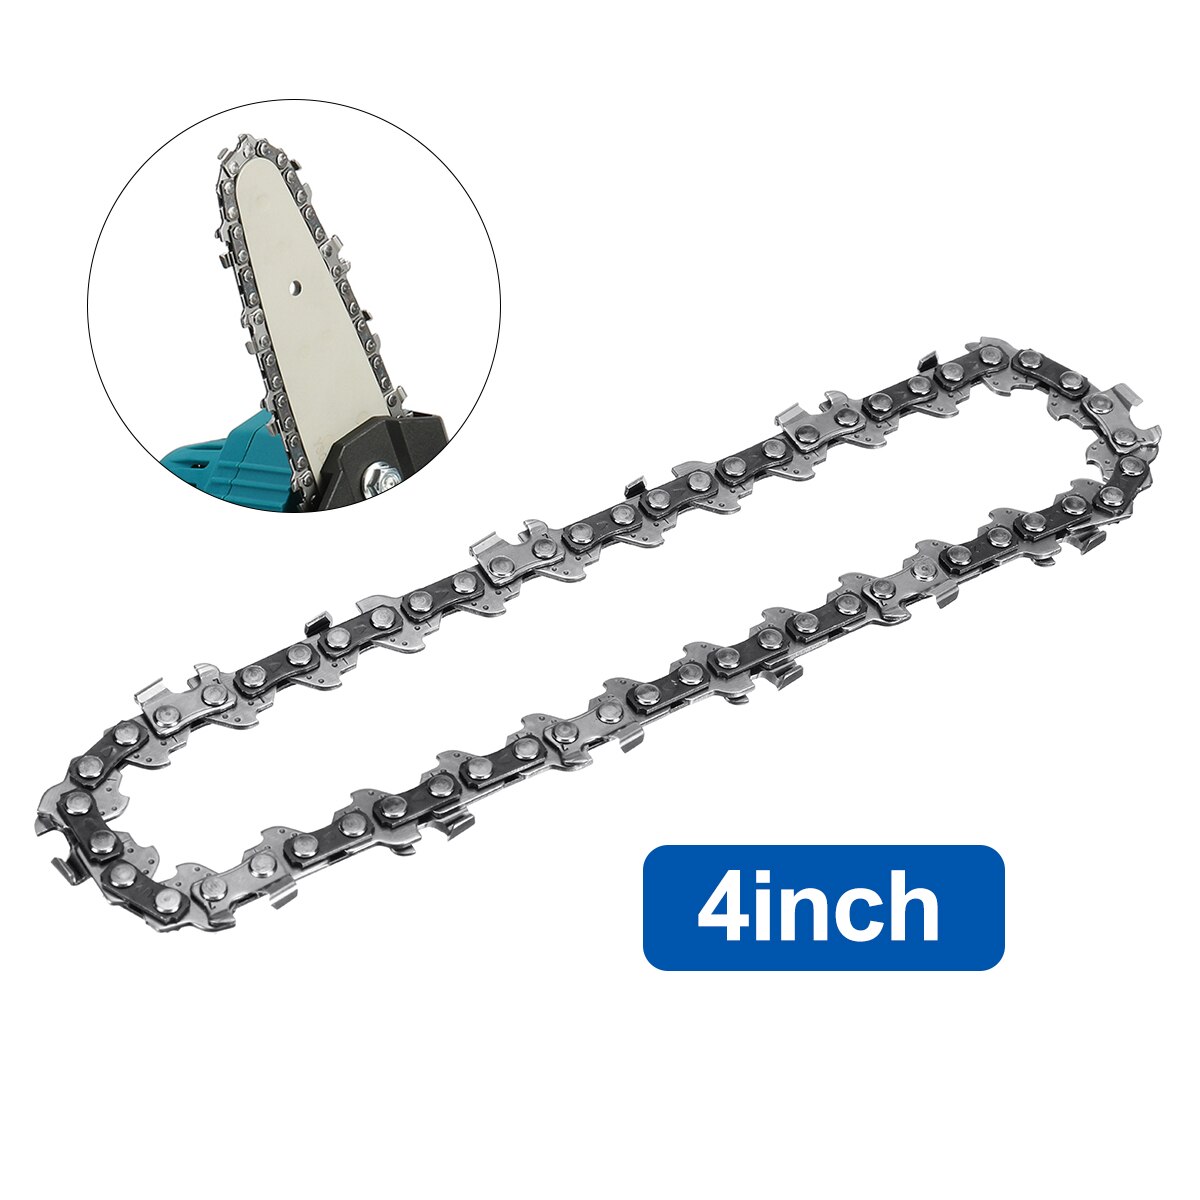 1000W 4 Inch Mini Elektrische Zaag Kettingzaag Met 2 Batterij Voor Houtbewerking Tuingereedschap Oplaadbare Elektrische Kettingzagen Hout cutter: Chain Only / EU